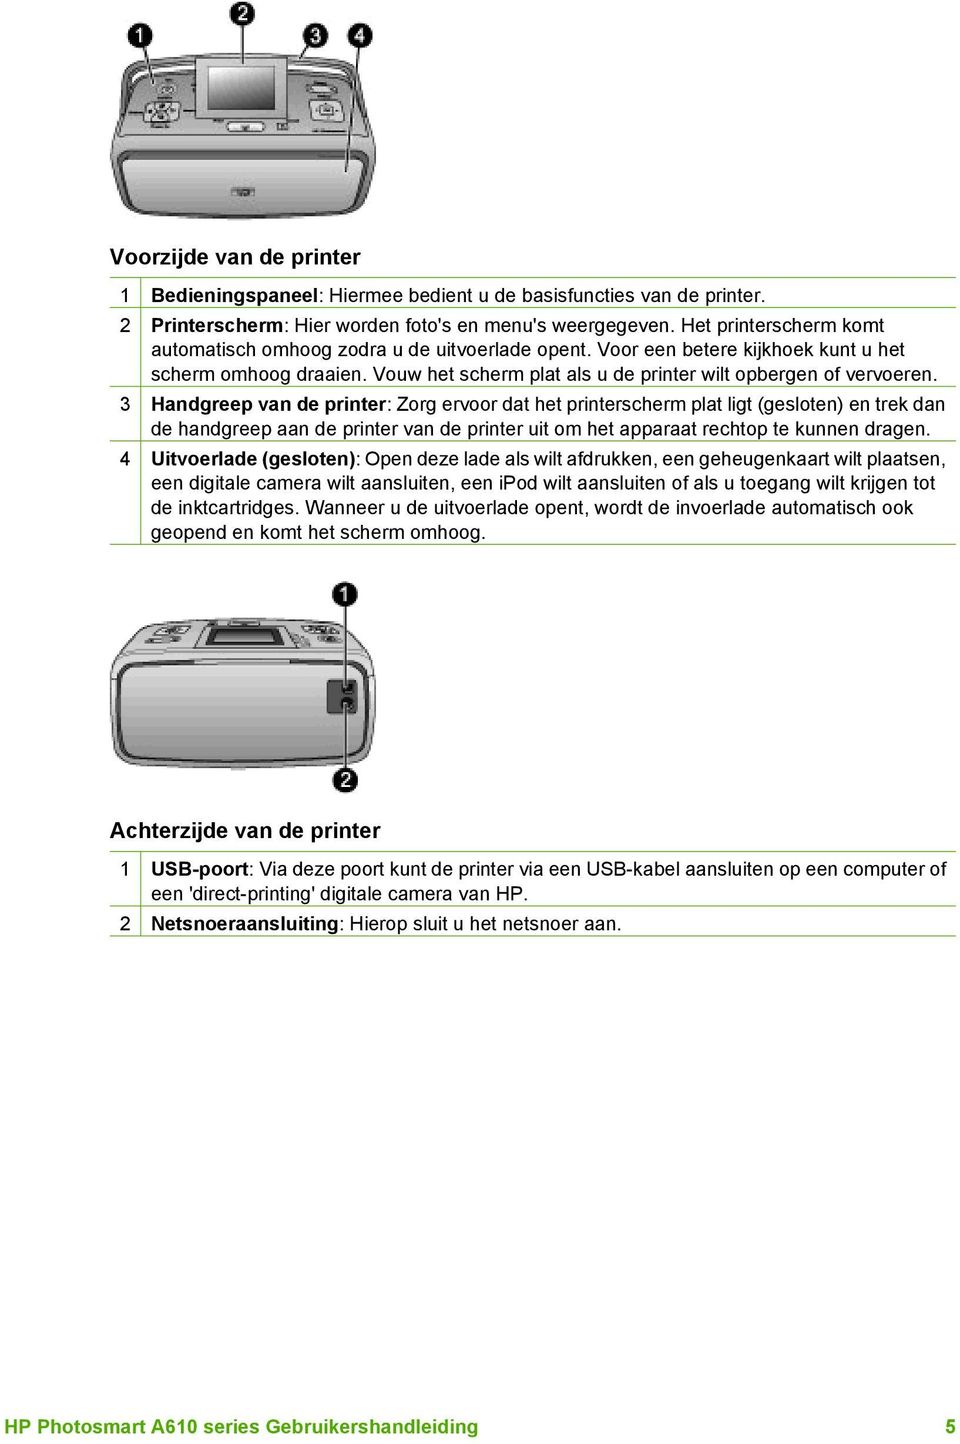 3 Handgreep van de printer: Zorg ervoor dat het printerscherm plat ligt (gesloten) en trek dan de handgreep aan de printer van de printer uit om het apparaat rechtop te kunnen dragen.